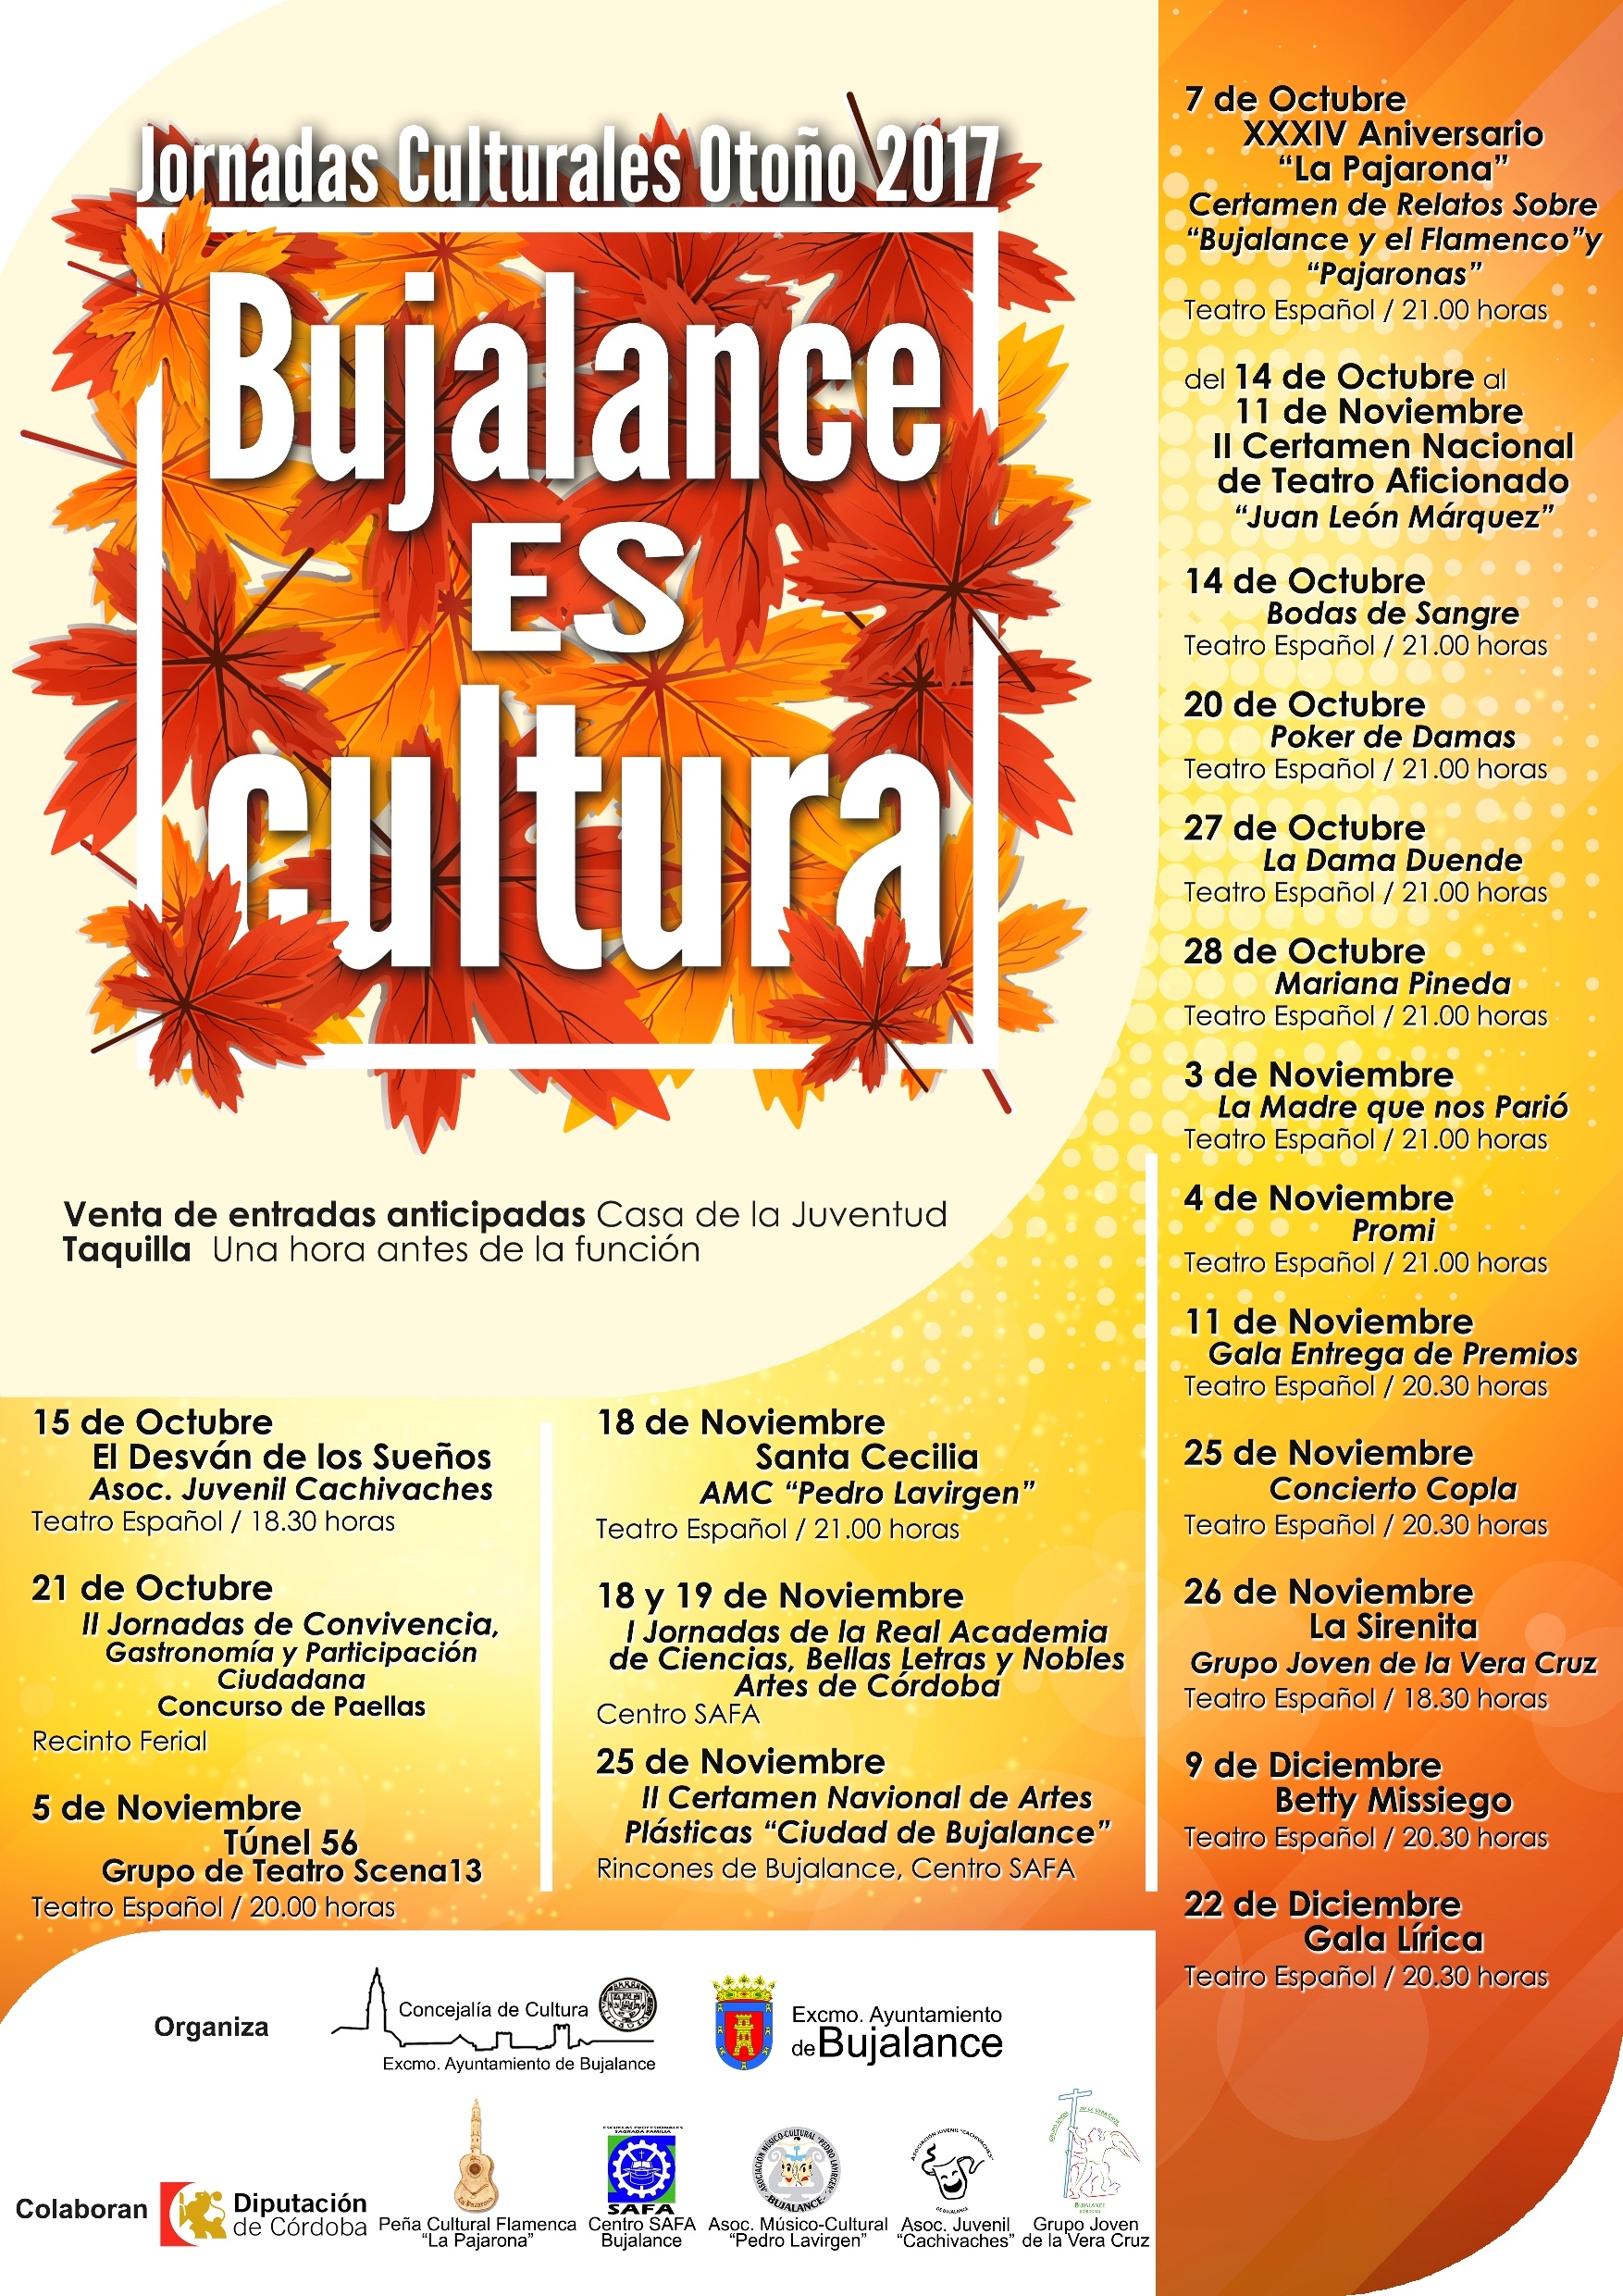 Jornadas Culturales 2017